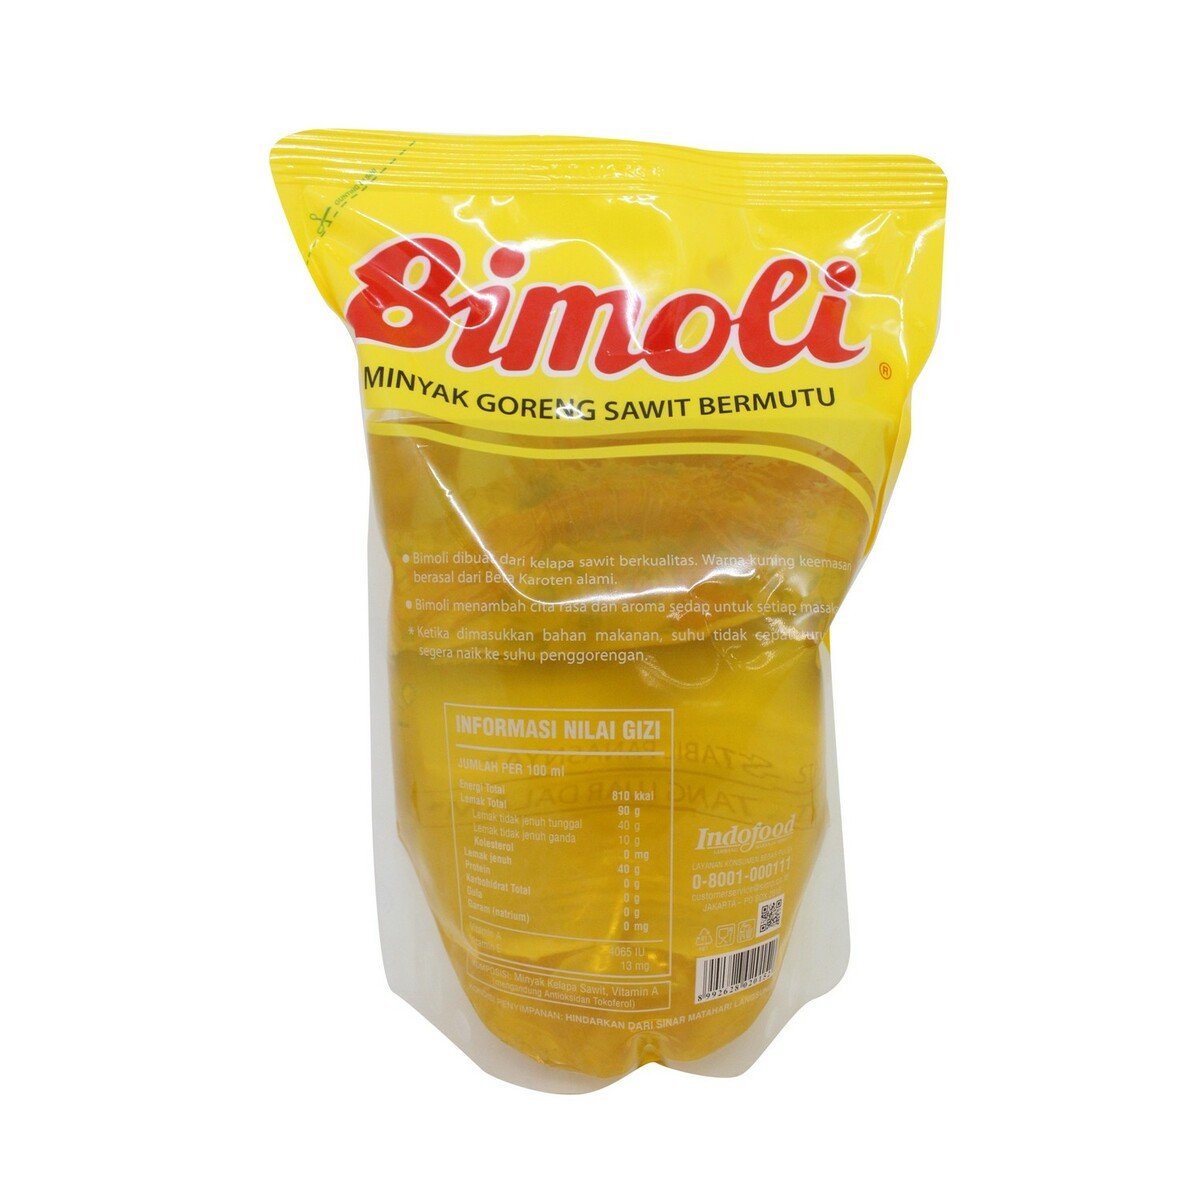 Bimoli Minyak Goreng Pouch 2Litre